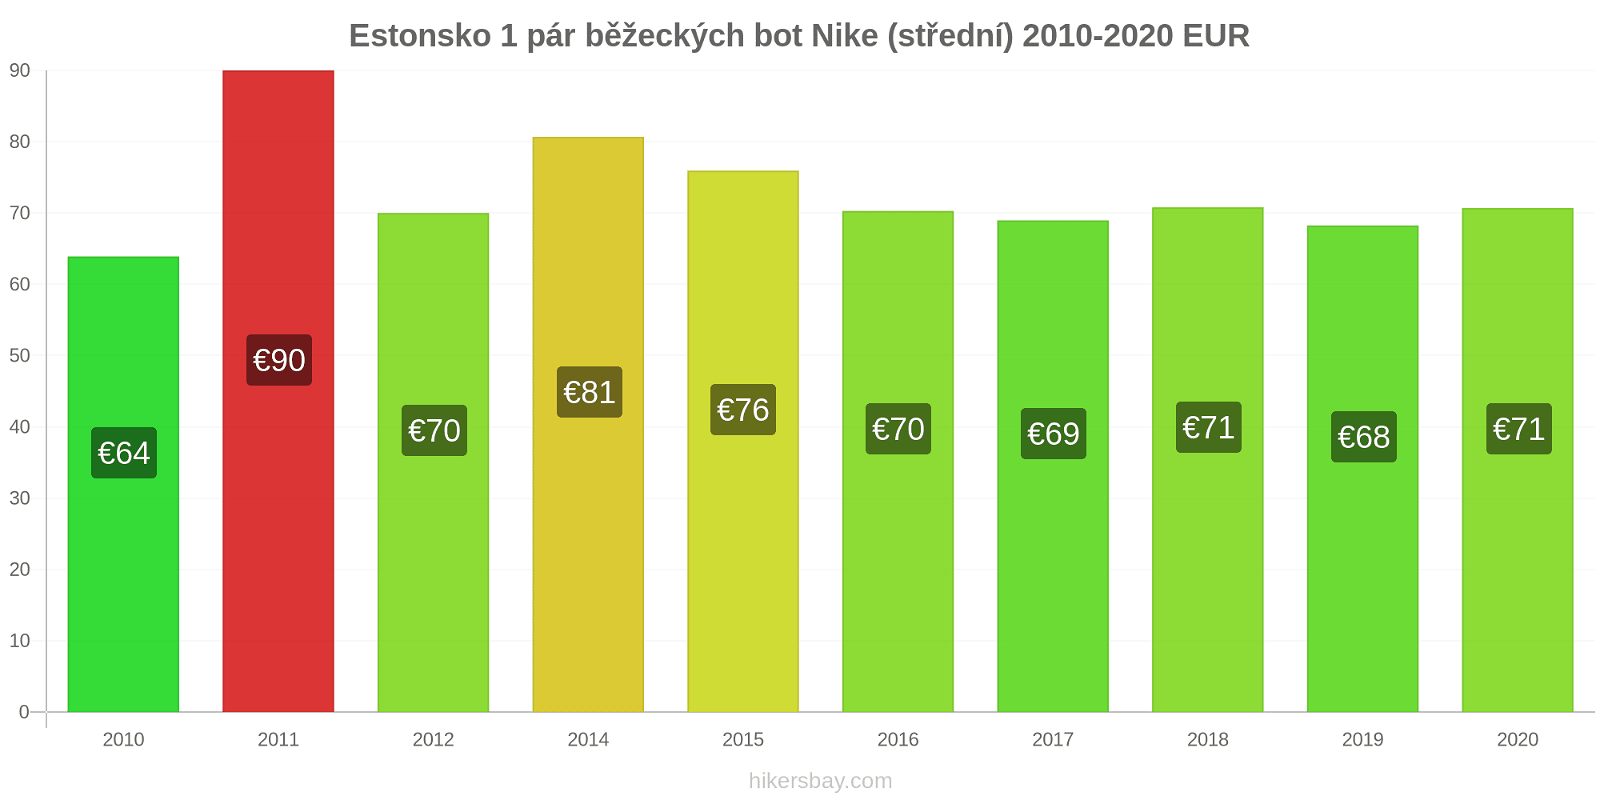 Estonsko změny cen 1 pár běžeckých bot Nike (střední) hikersbay.com